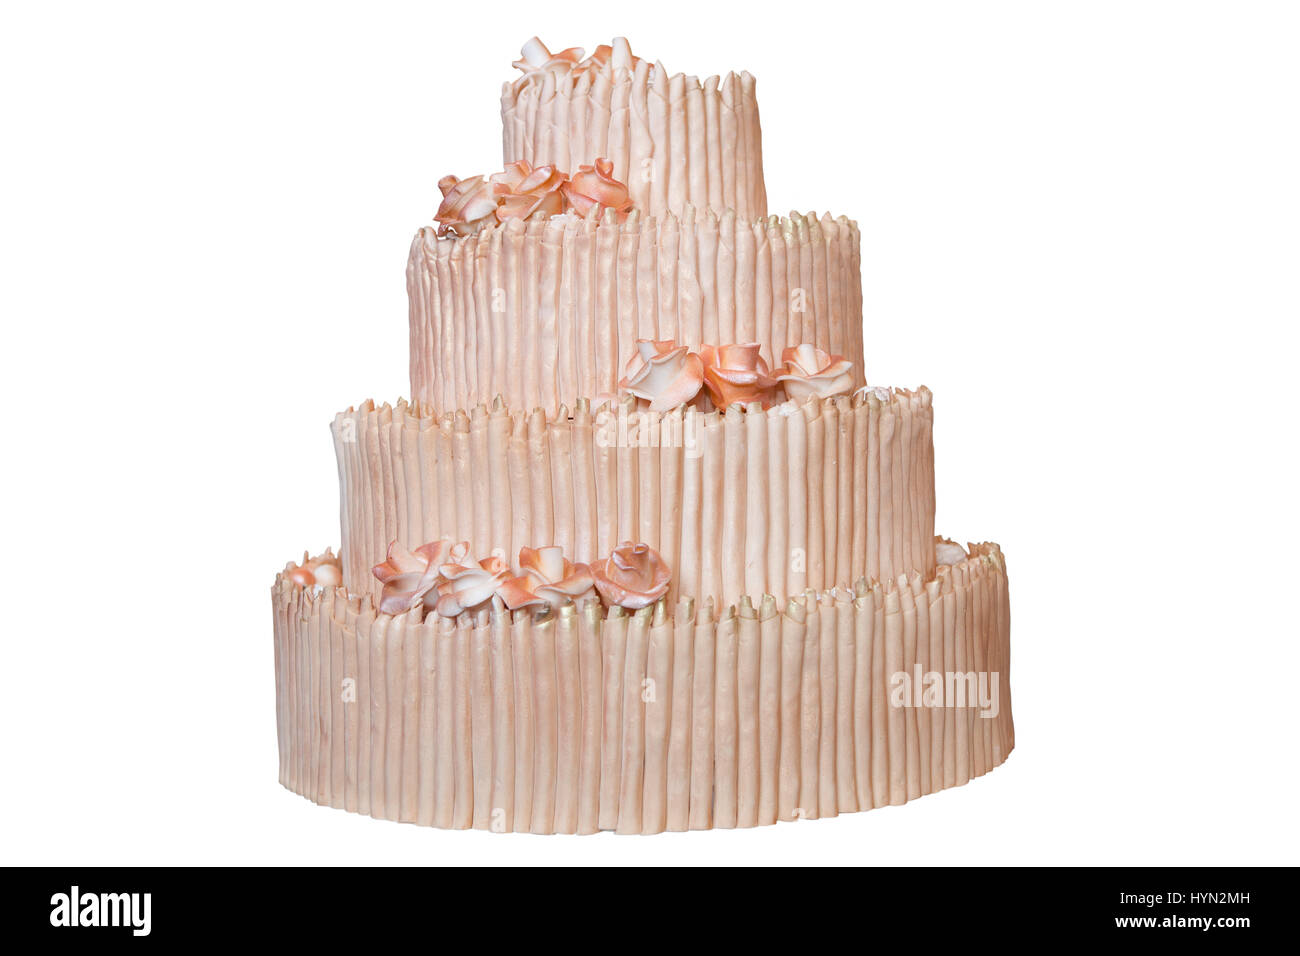 Gâteau de mariage élégant avec des fleurs beiges, isolated on white Banque D'Images